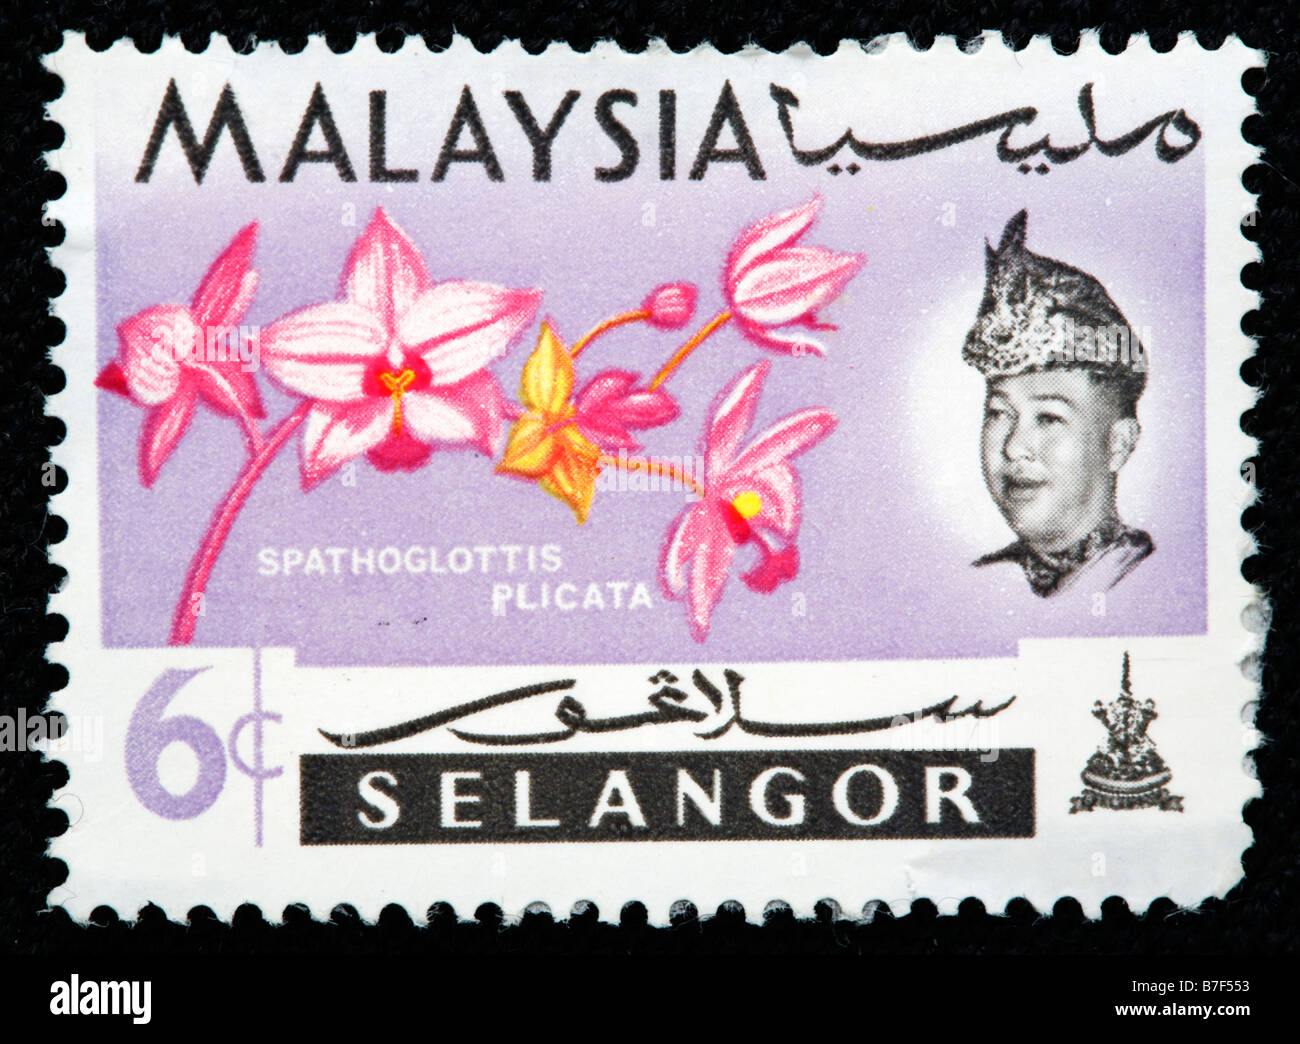 Spathoglottis plicata, flower, postage stamp, Malaysia, Selangor Stock Photo